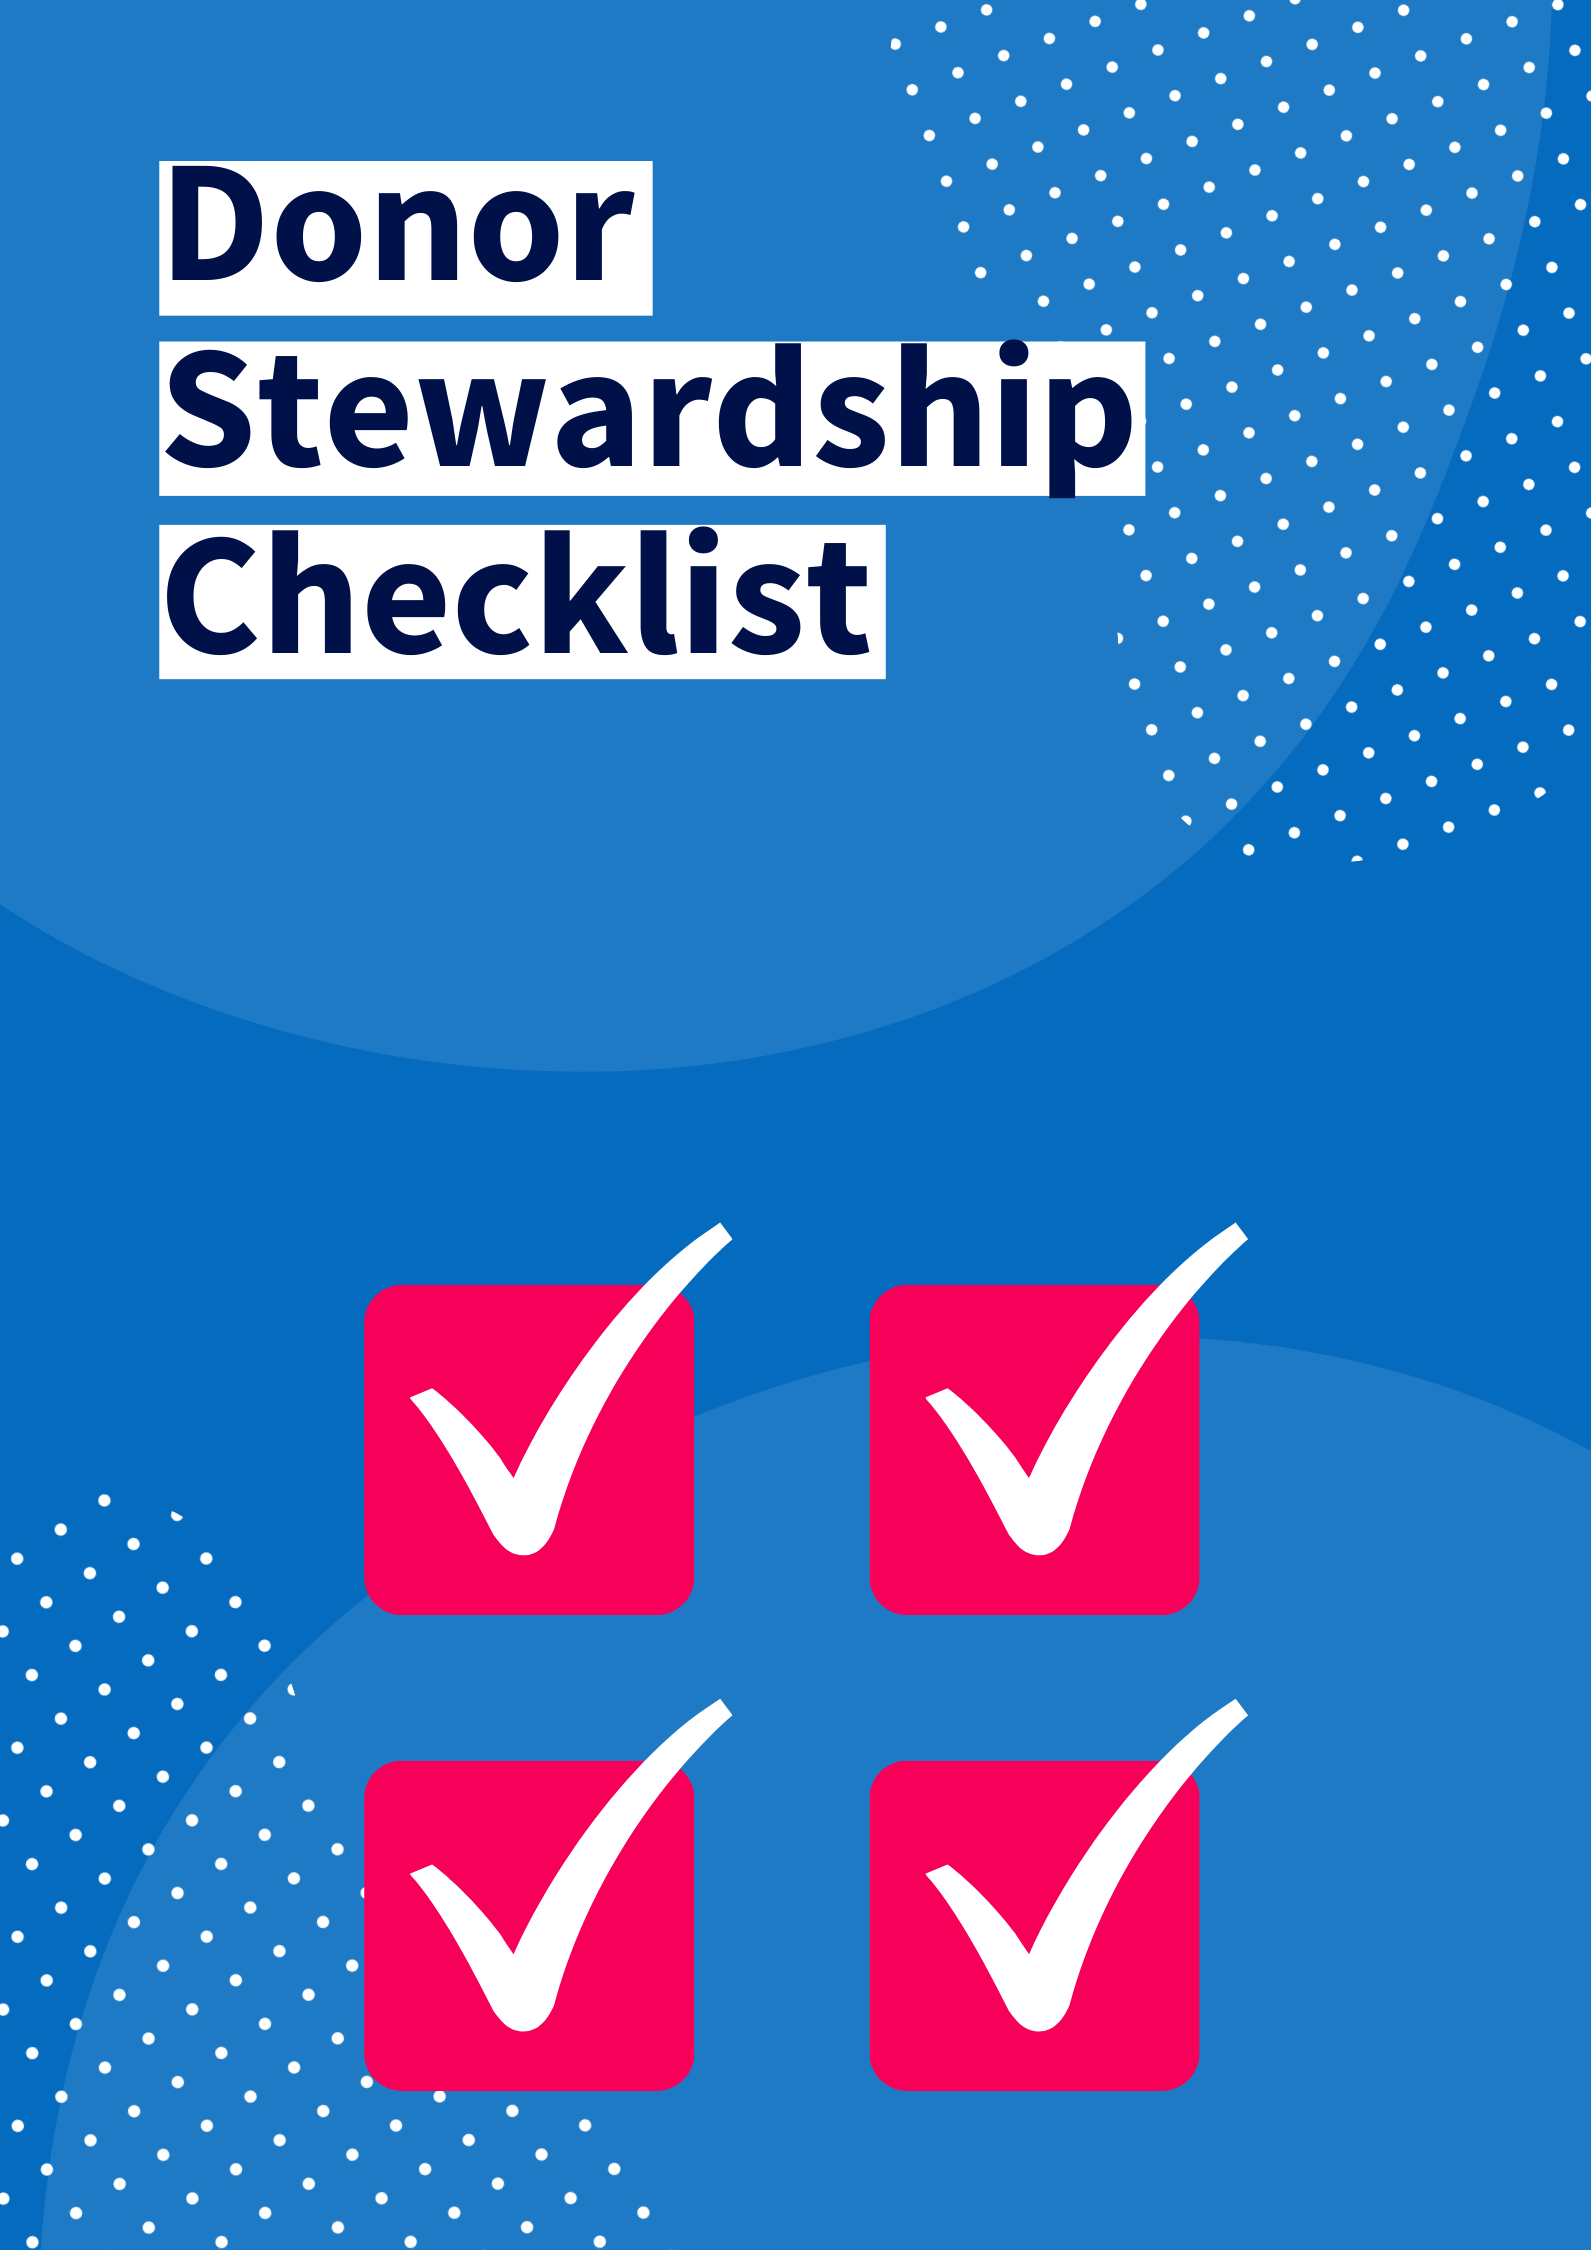 Donor Stewardship Checklist